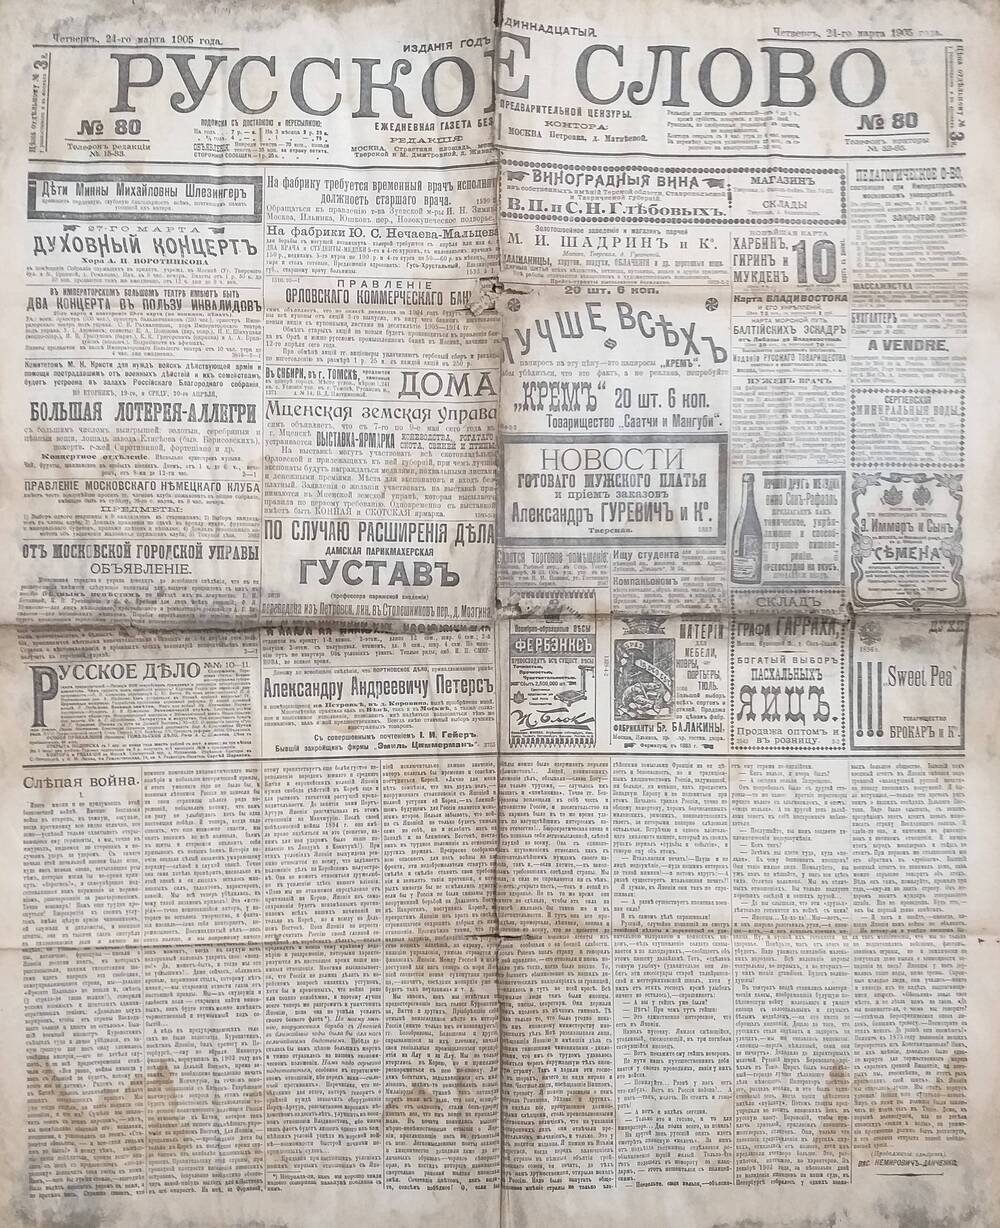 Газета Русское слово № 80 от 24.03.1905 года.